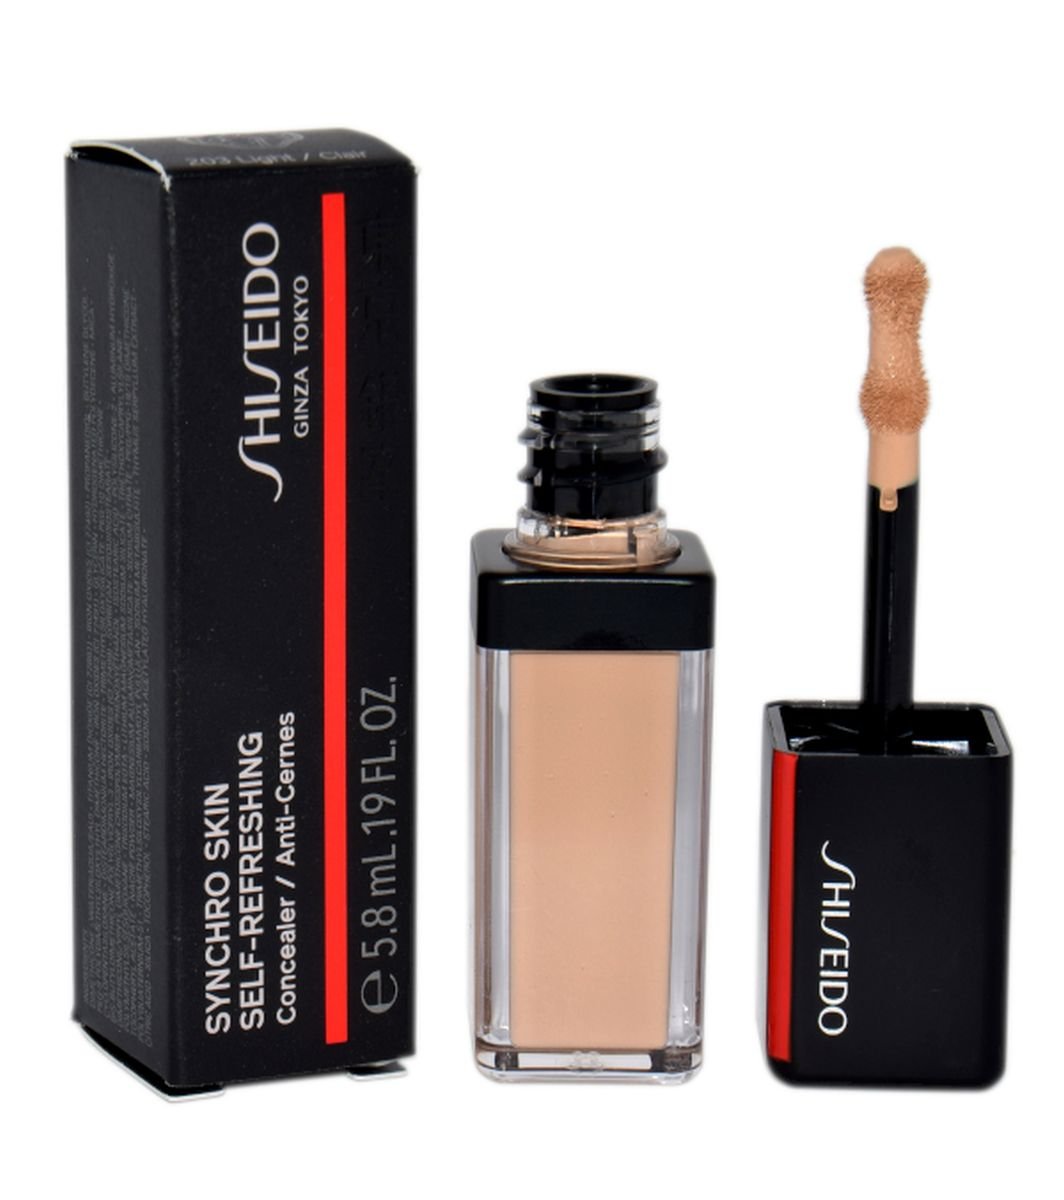 Shiseido Synchro Skin Self-Refreshing Concealer korektor w płynie odcień 203 Light/Clair 5,8 ml